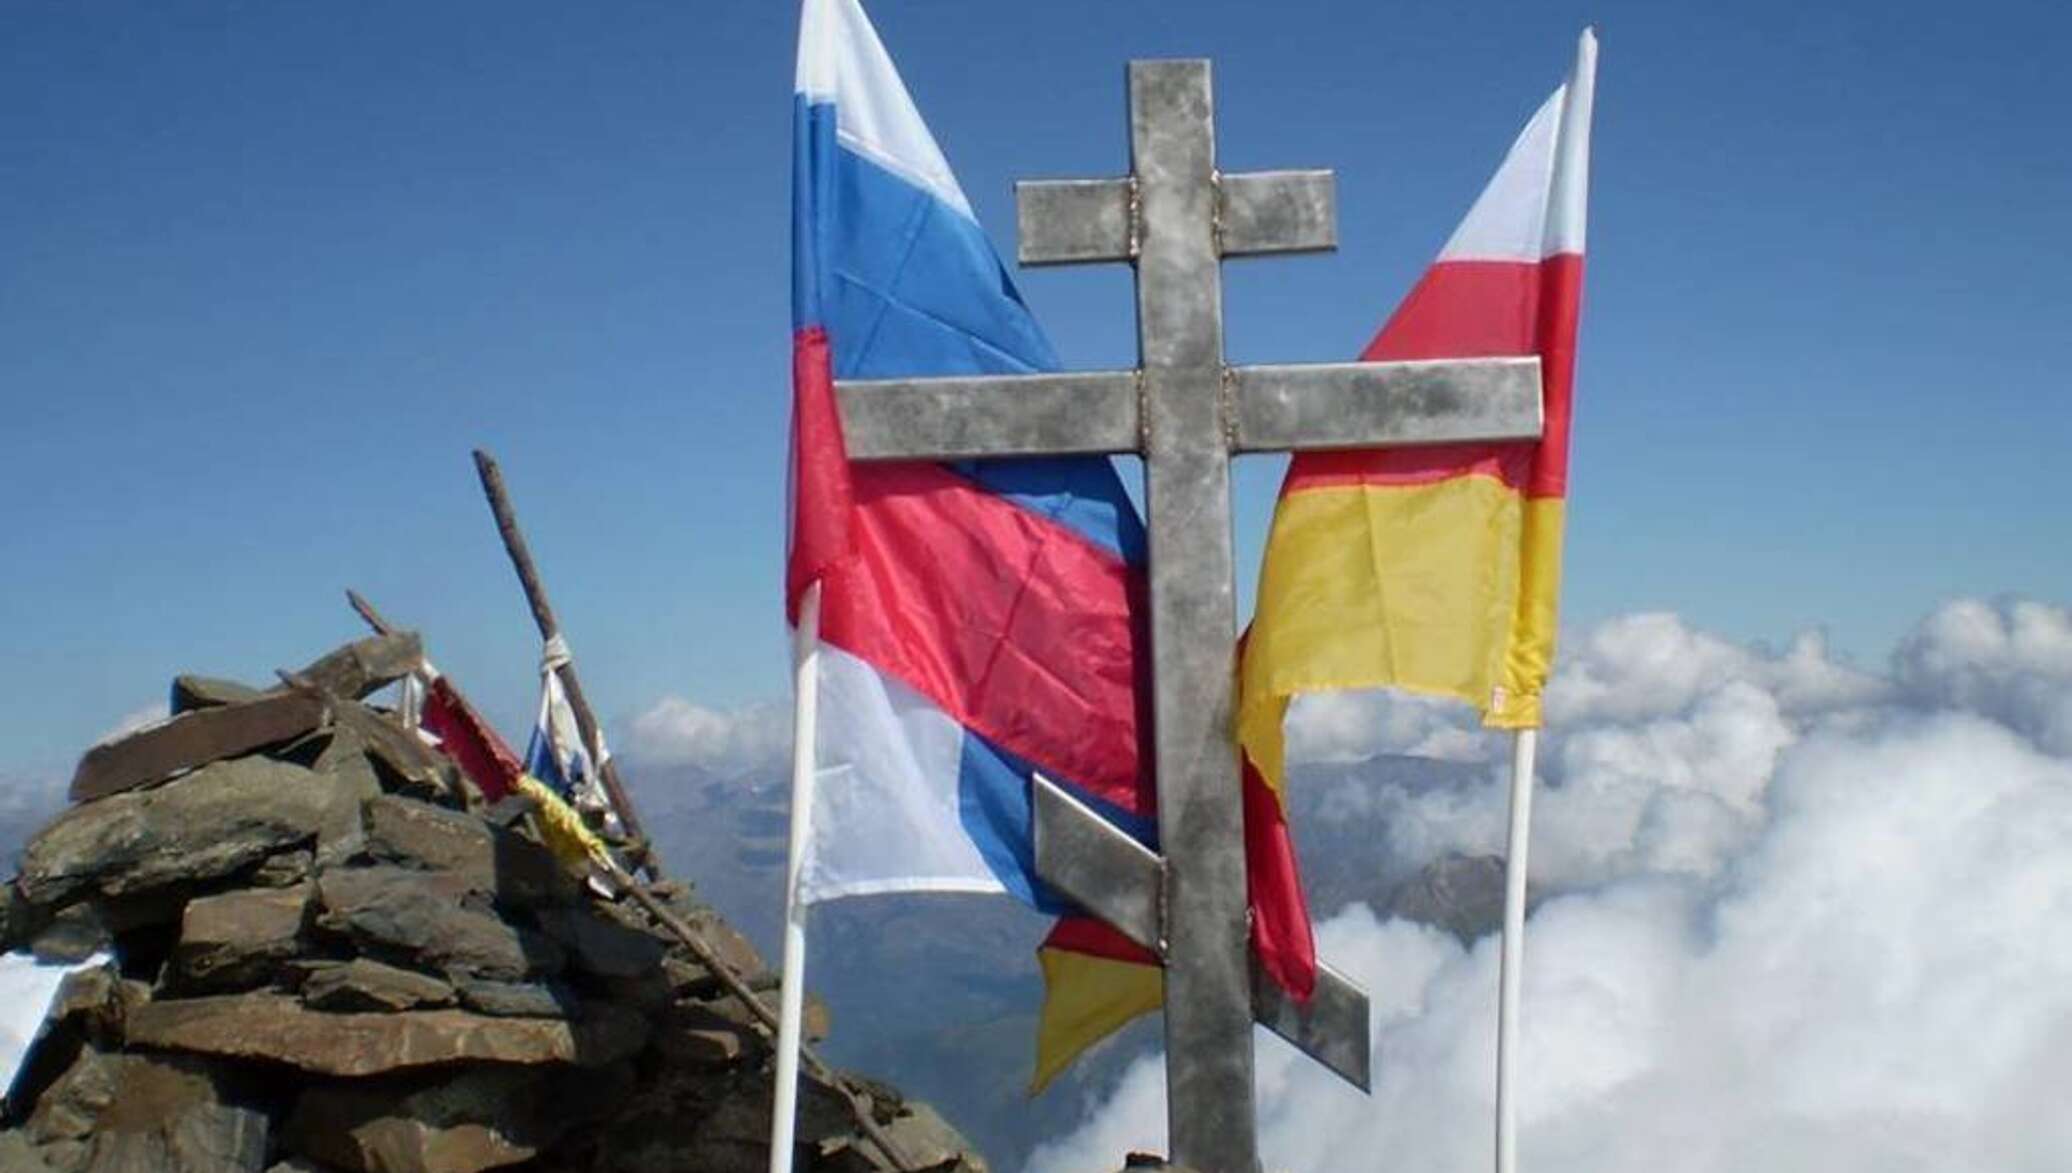 Сердце осетии. Морахский крест Южная Осетия. Флаг Северной Осетии. Флаг РСО-Алания. Осетинский флаг с крестом.